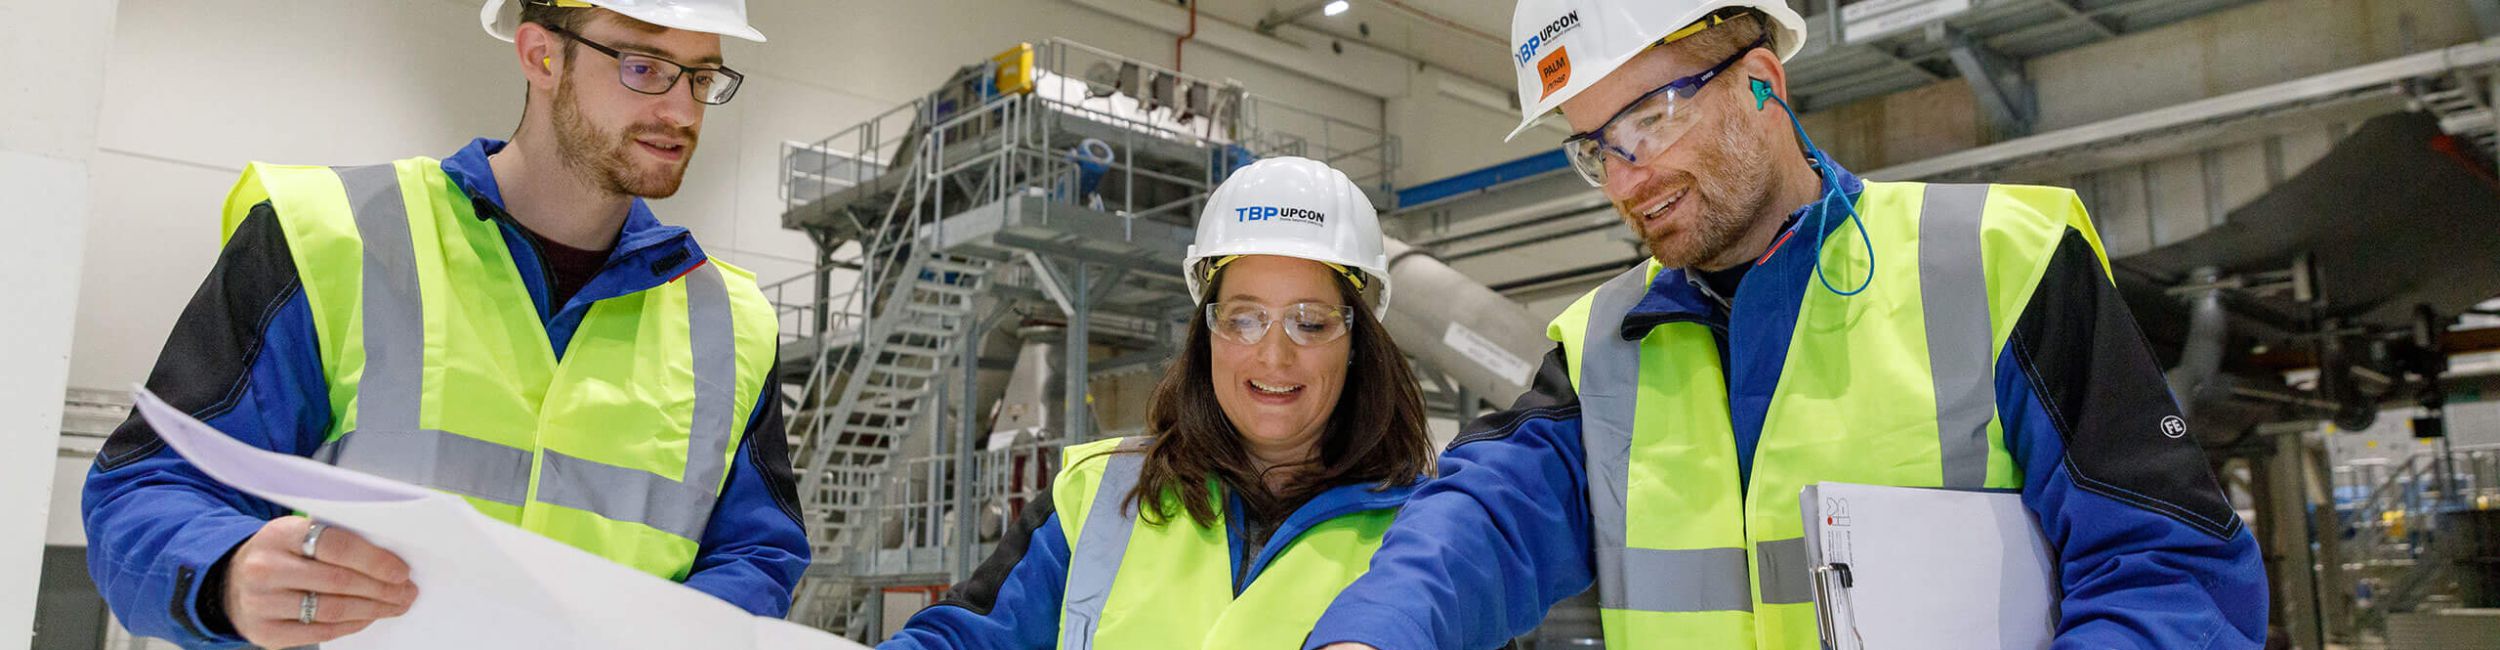 Ingenieure von TBP Upcon prüfen Pläne in einem papierverarbeitenden Unternehmen